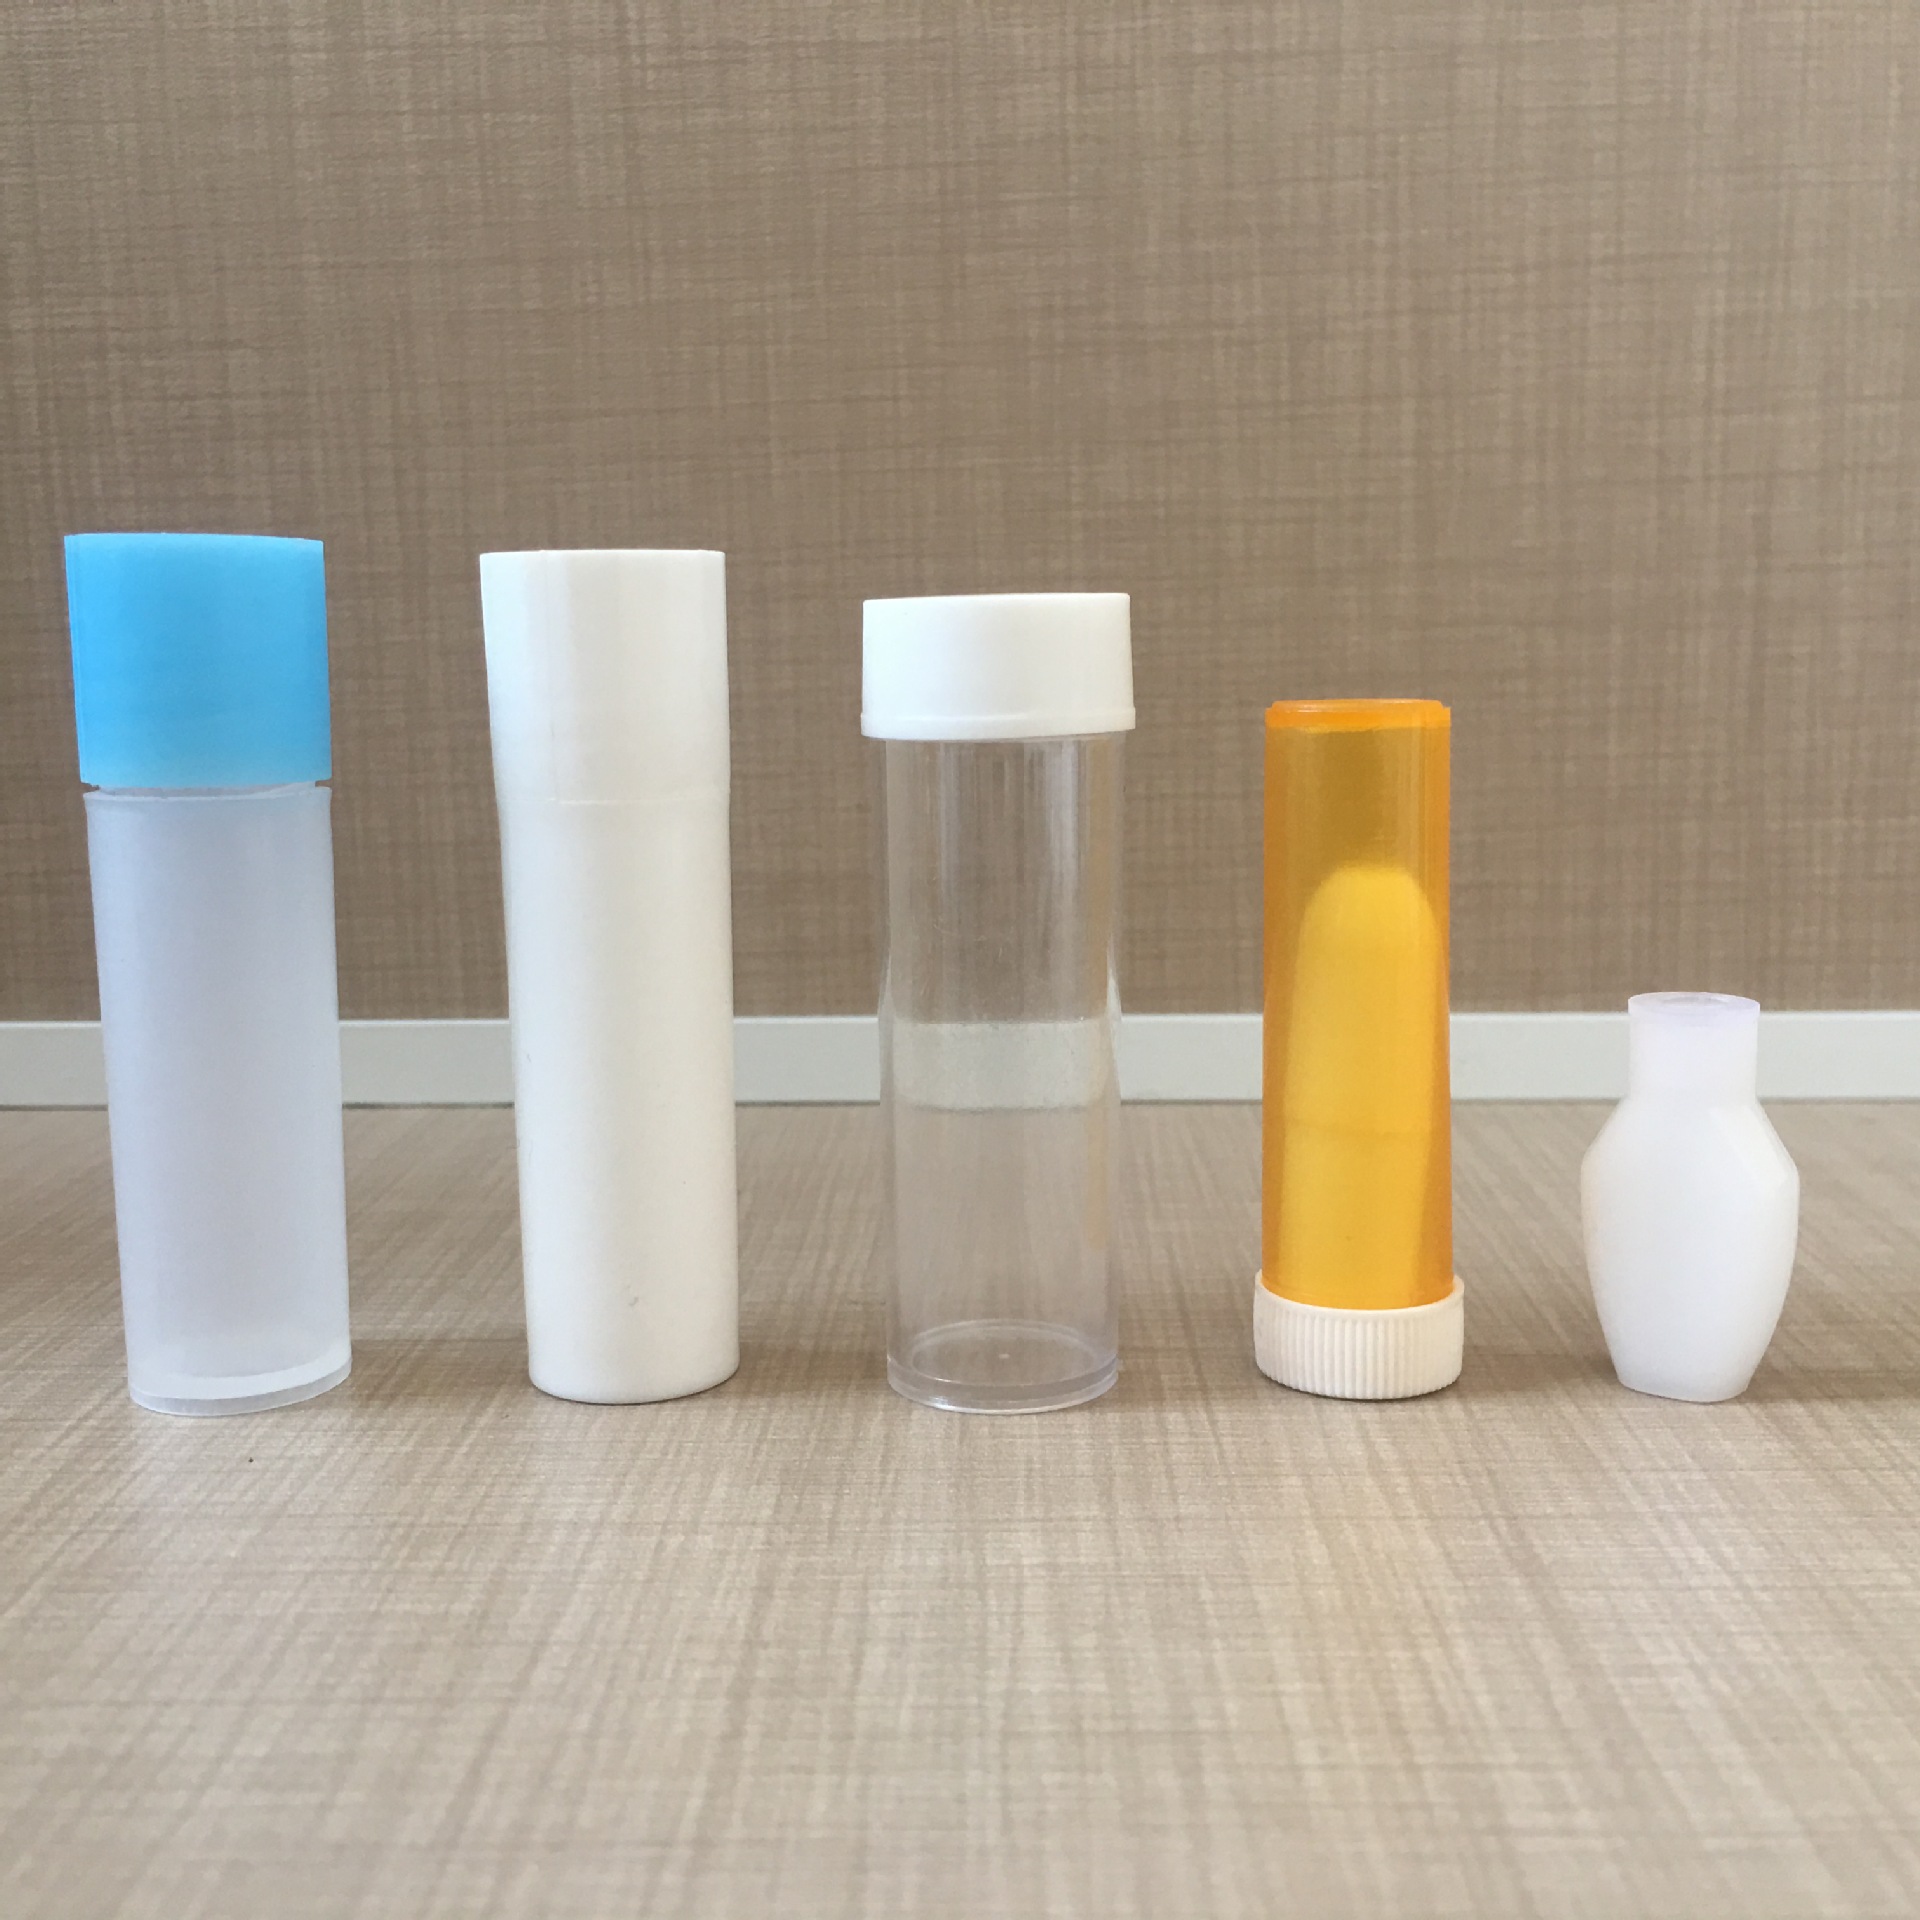 厂家直销2g药管塑料管透明塑料管医用塑料管现货供应示例图10